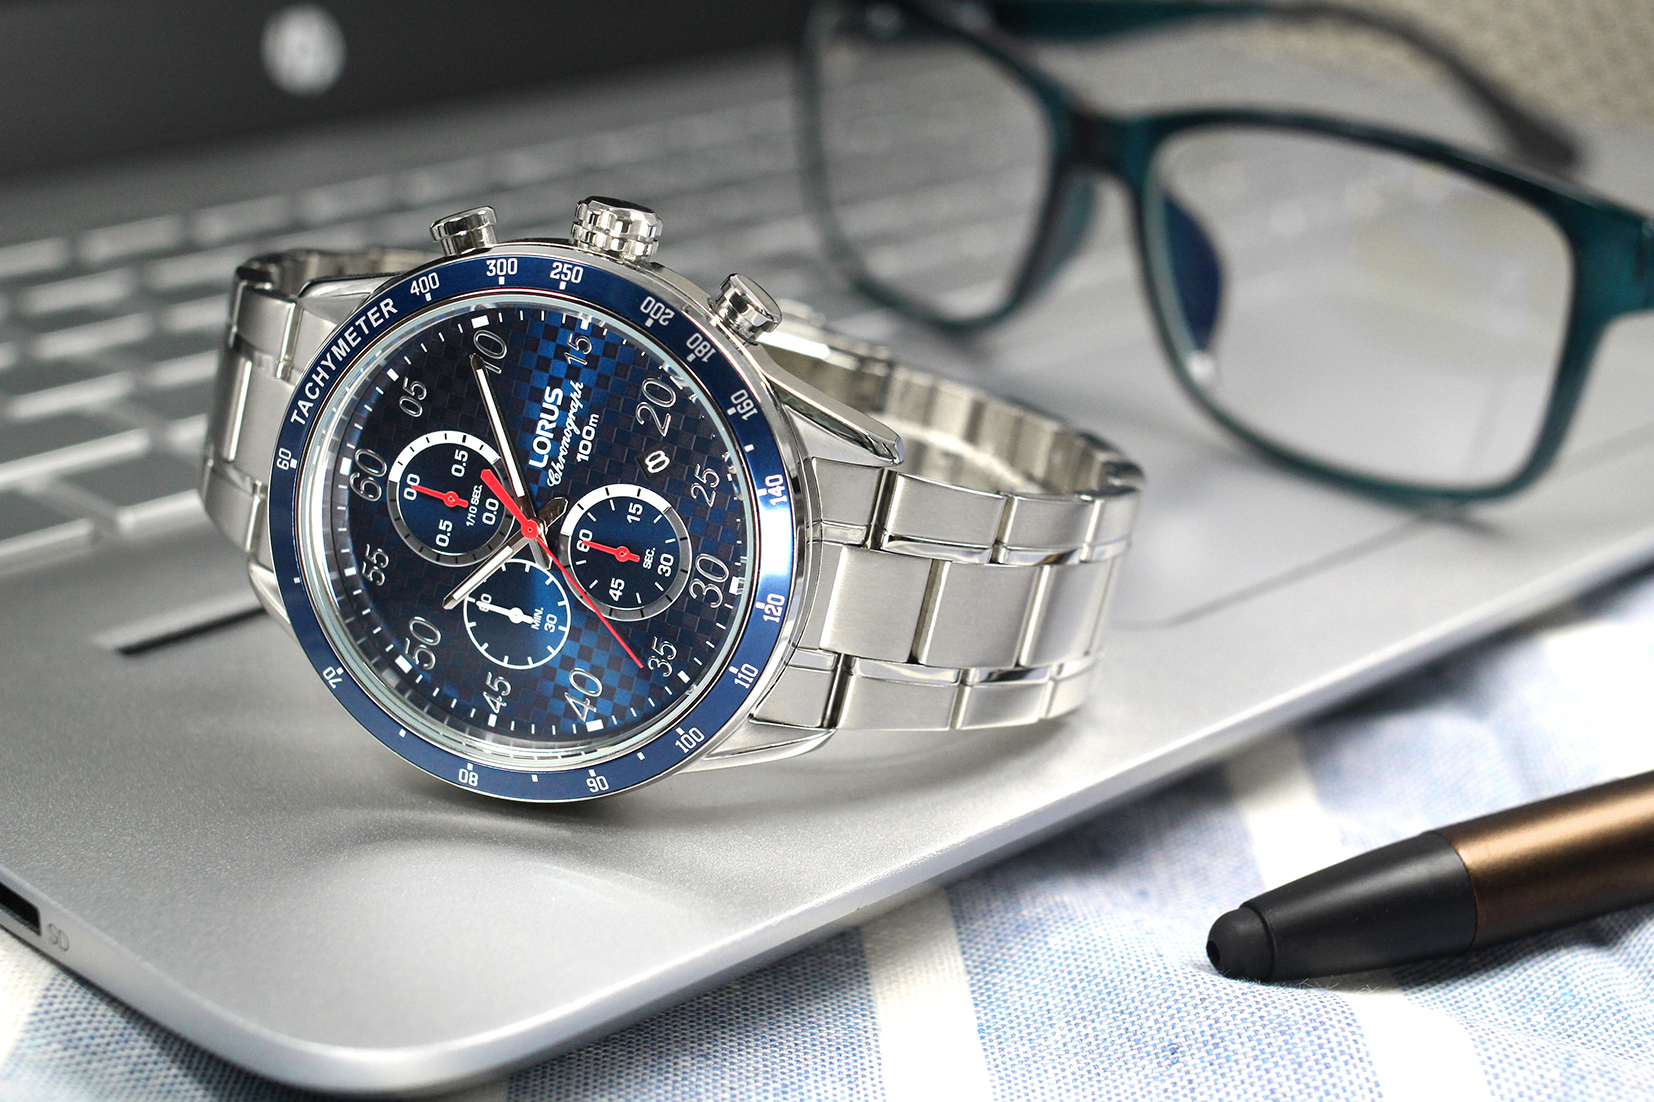 Lorus Watches - RM329EX9 | Solaruhren